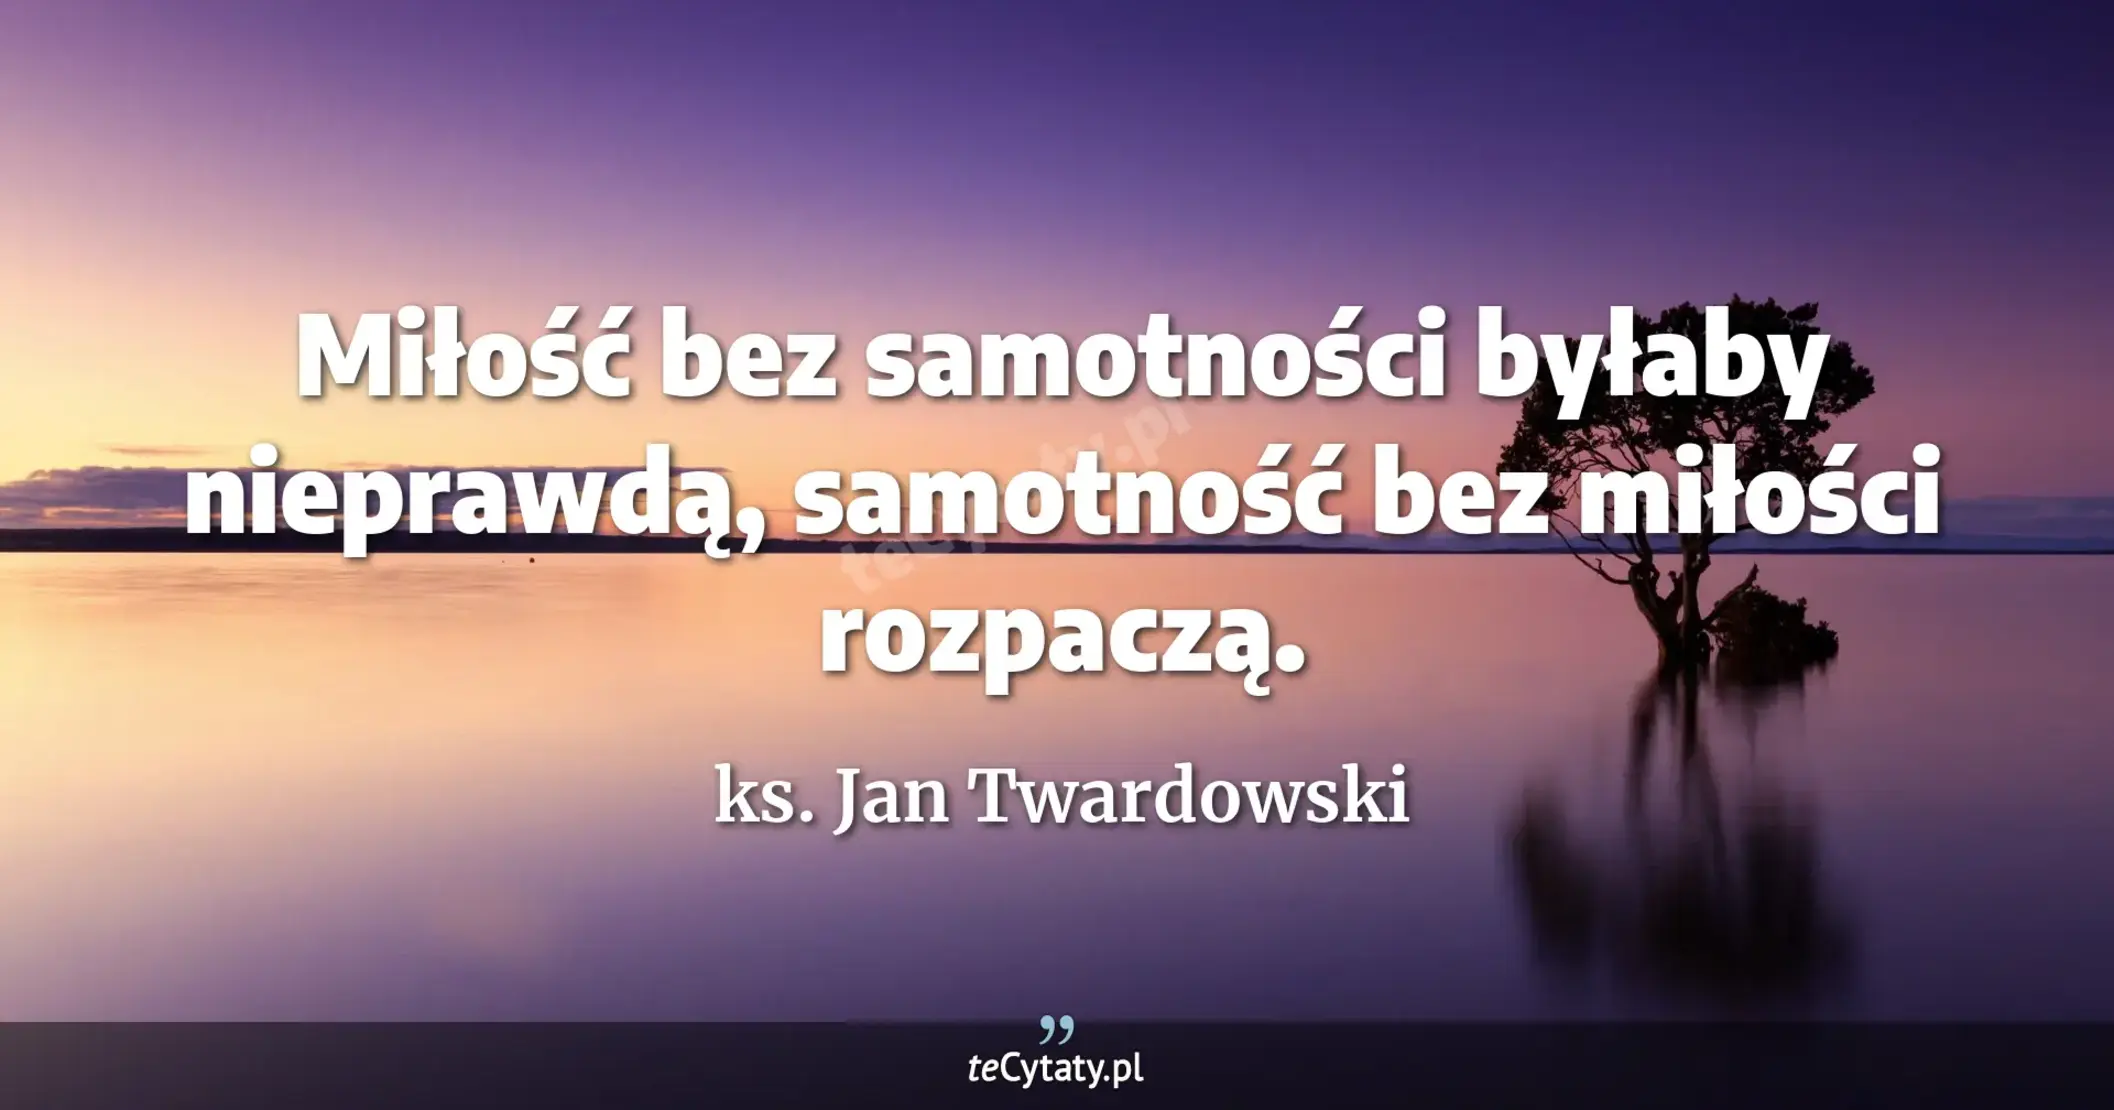 Miłość bez samotności byłaby nieprawdą, samotność bez miłości rozpaczą. - ks. Jan Twardowski